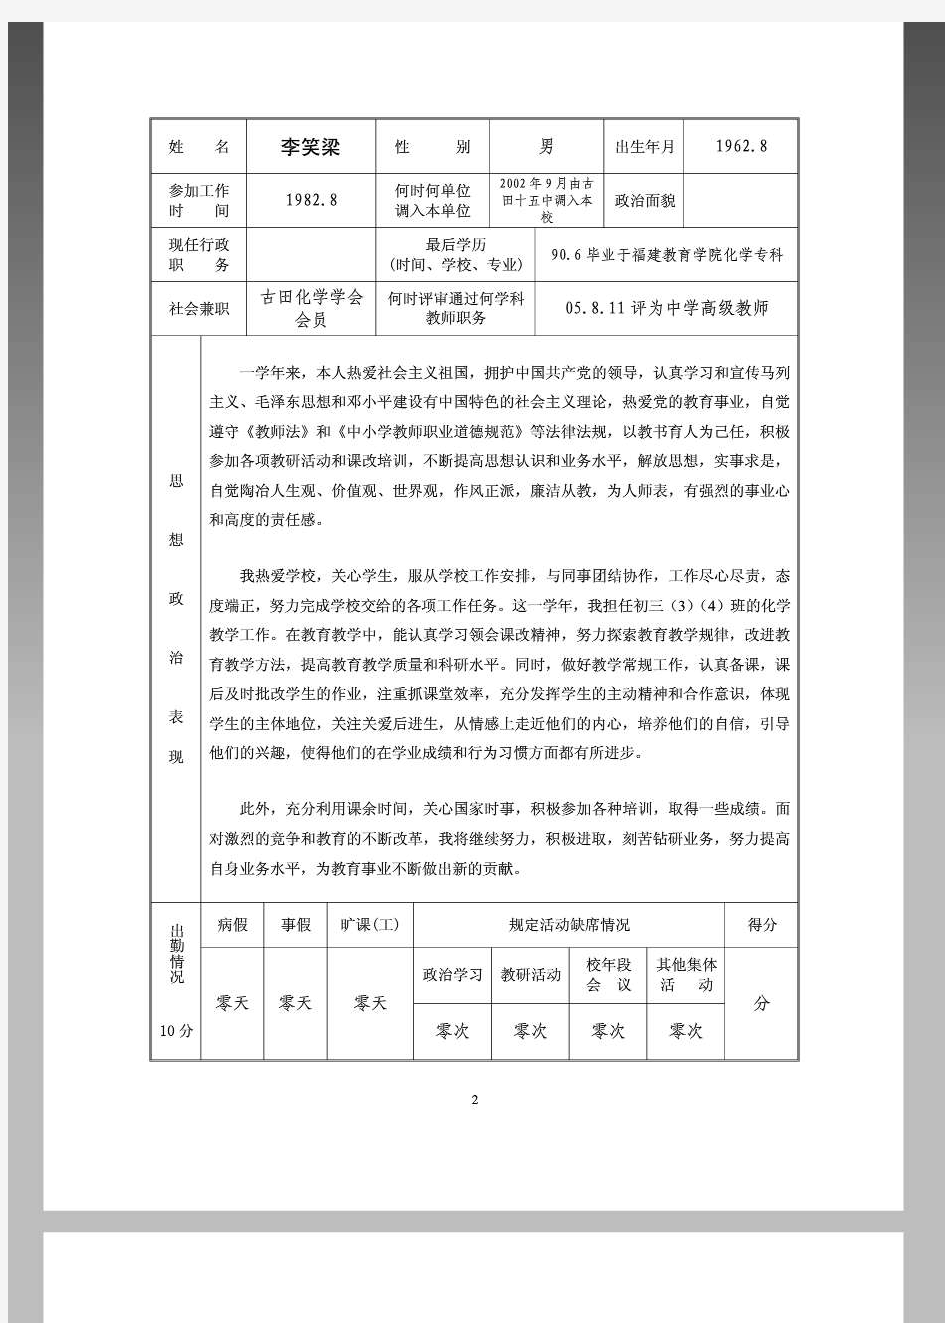 福建省中小学教师职务考评登记表 李笑梁填写